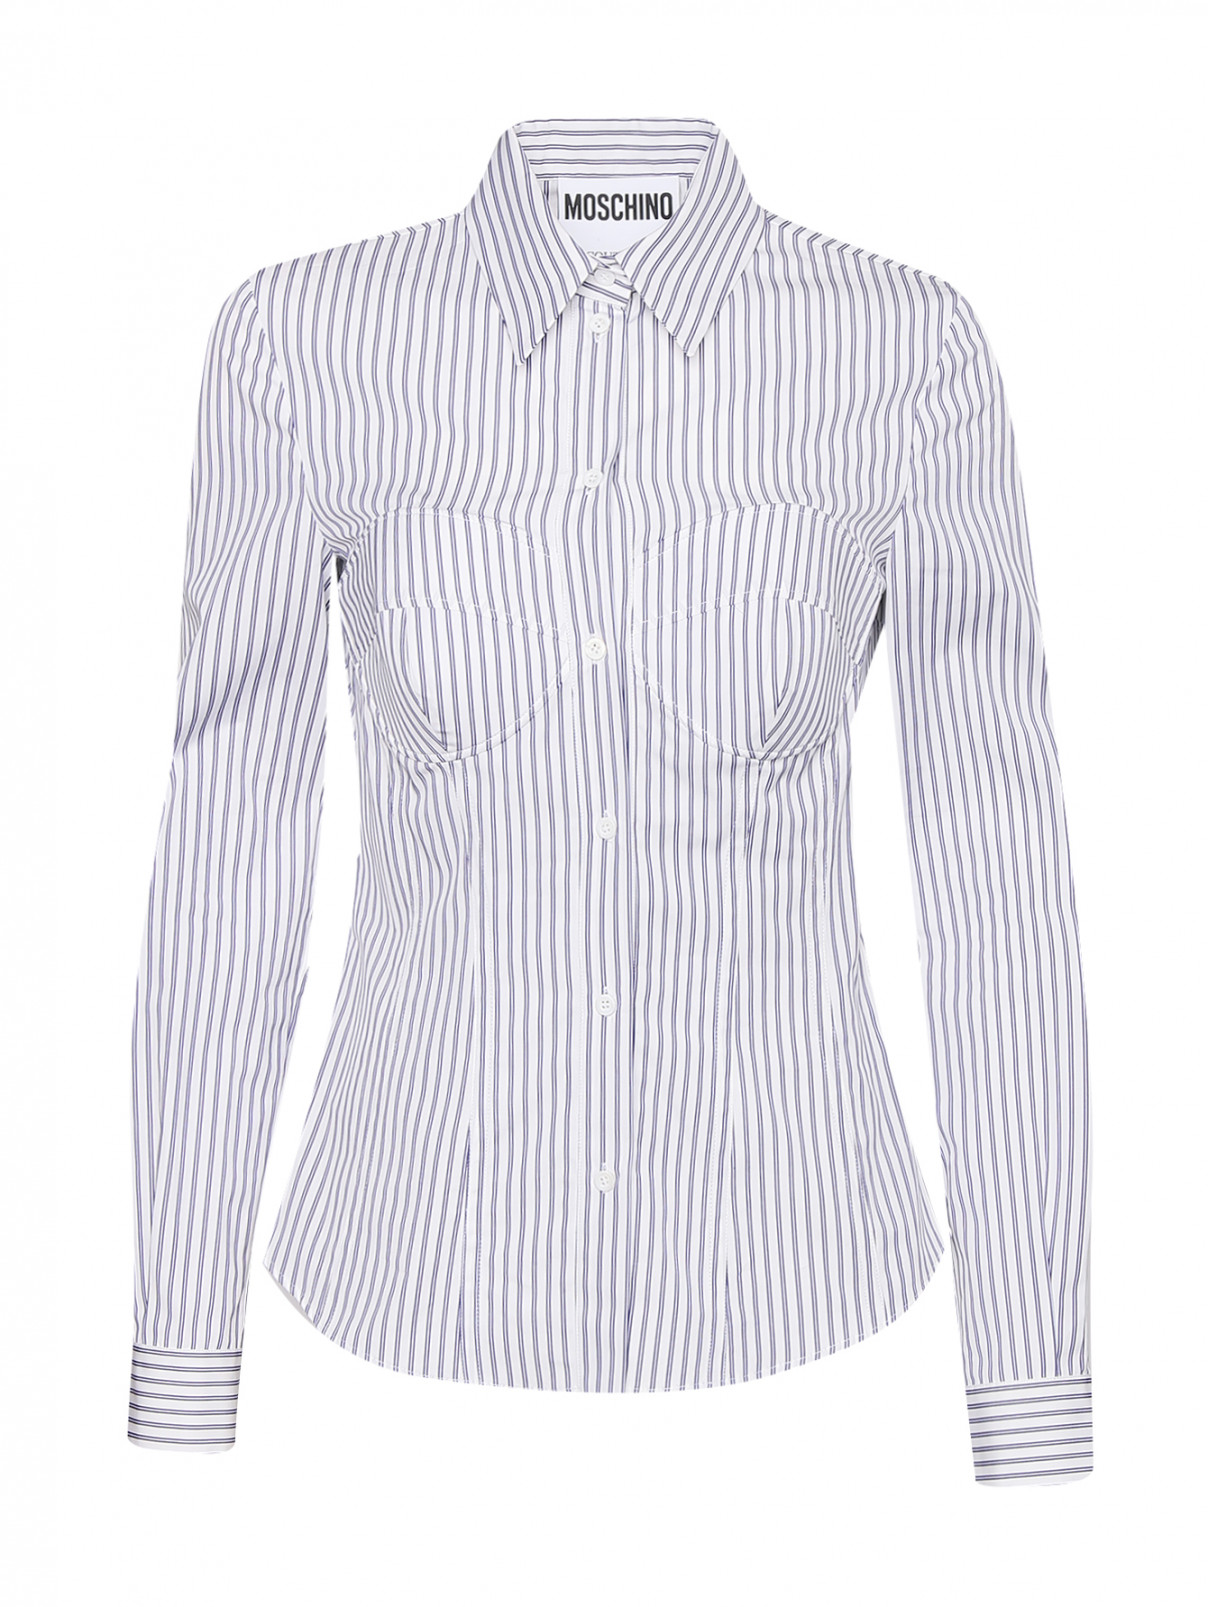 Рубашка из хлопка с узором полоска Moschino  –  Общий вид  – Цвет:  Узор